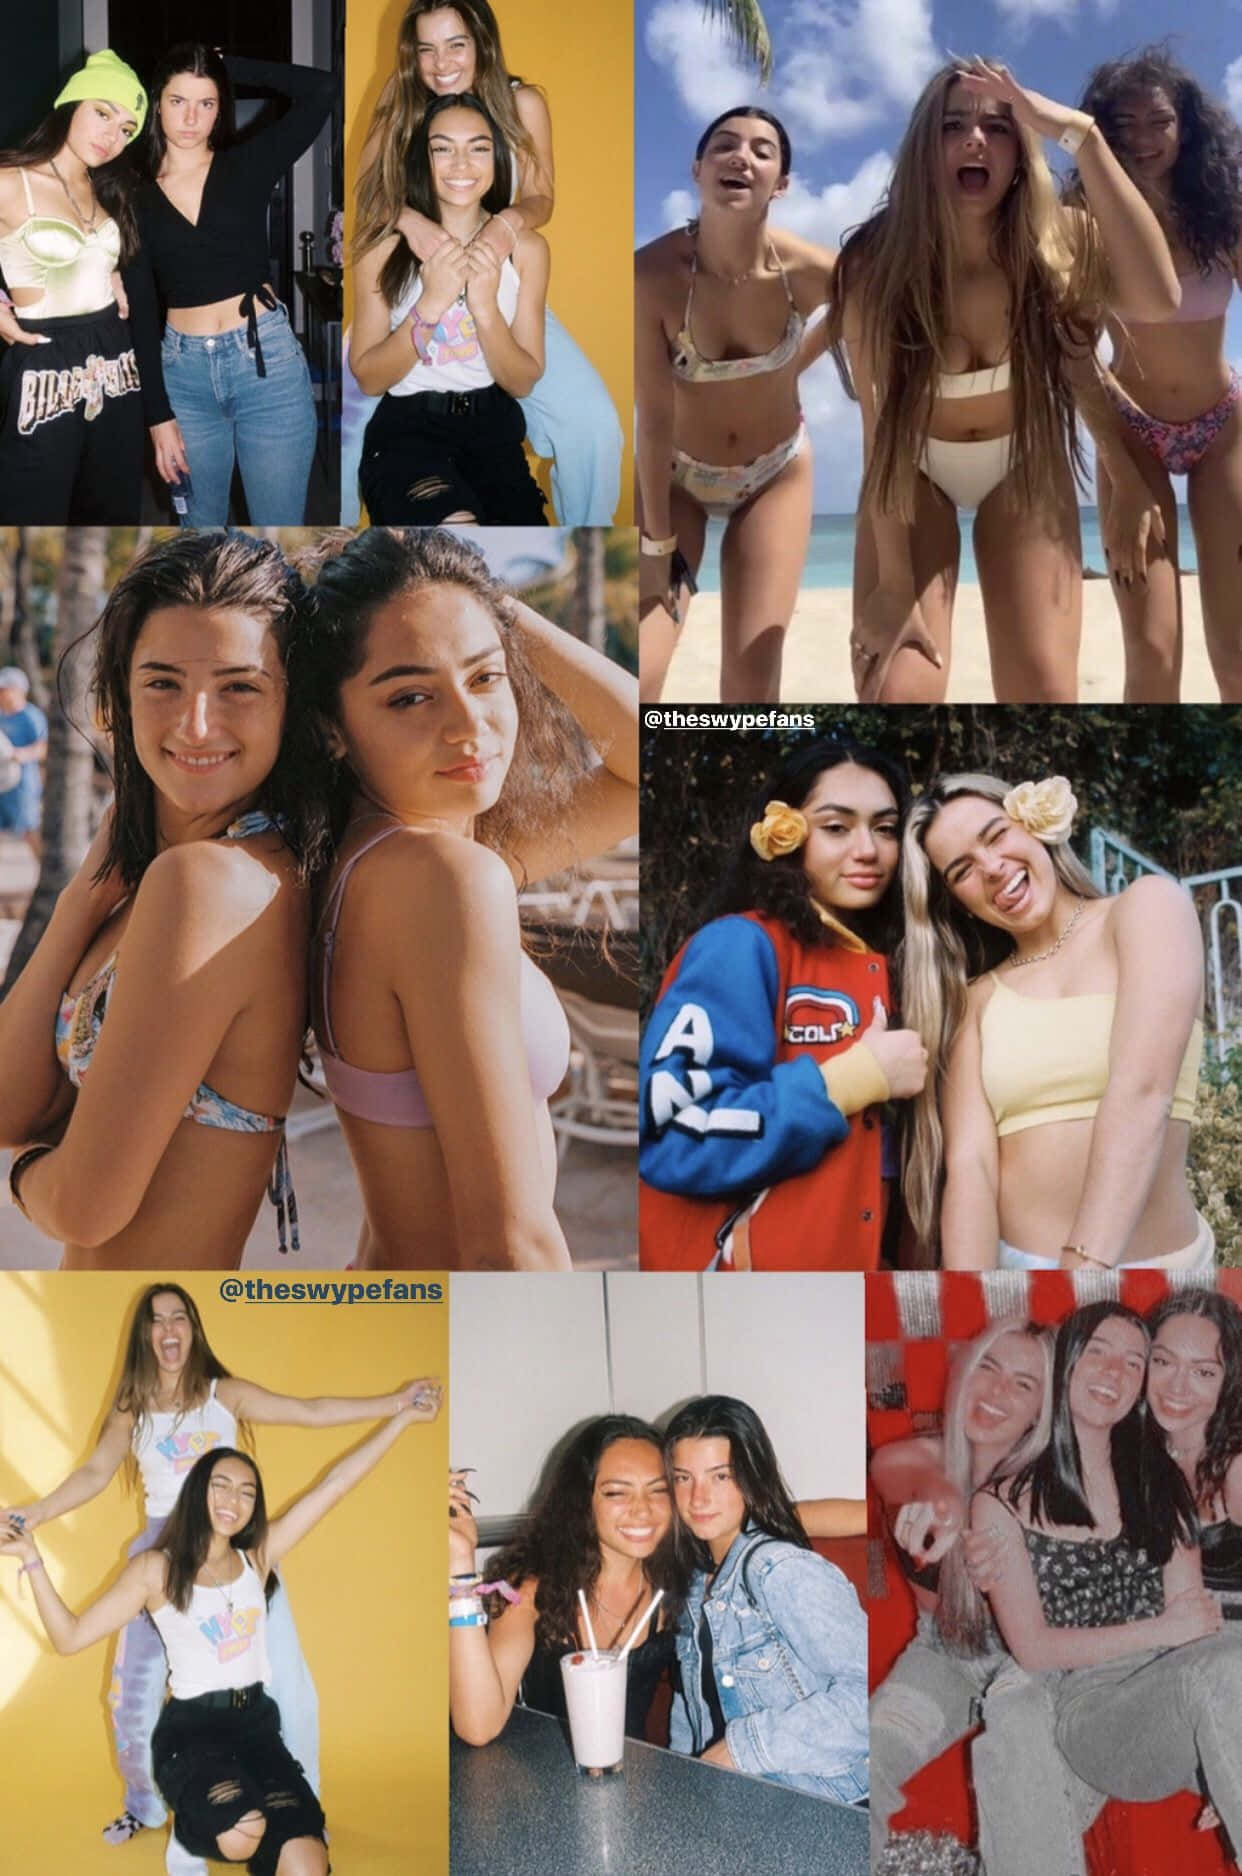 En collage af billeder af piger i bikini. Wallpaper